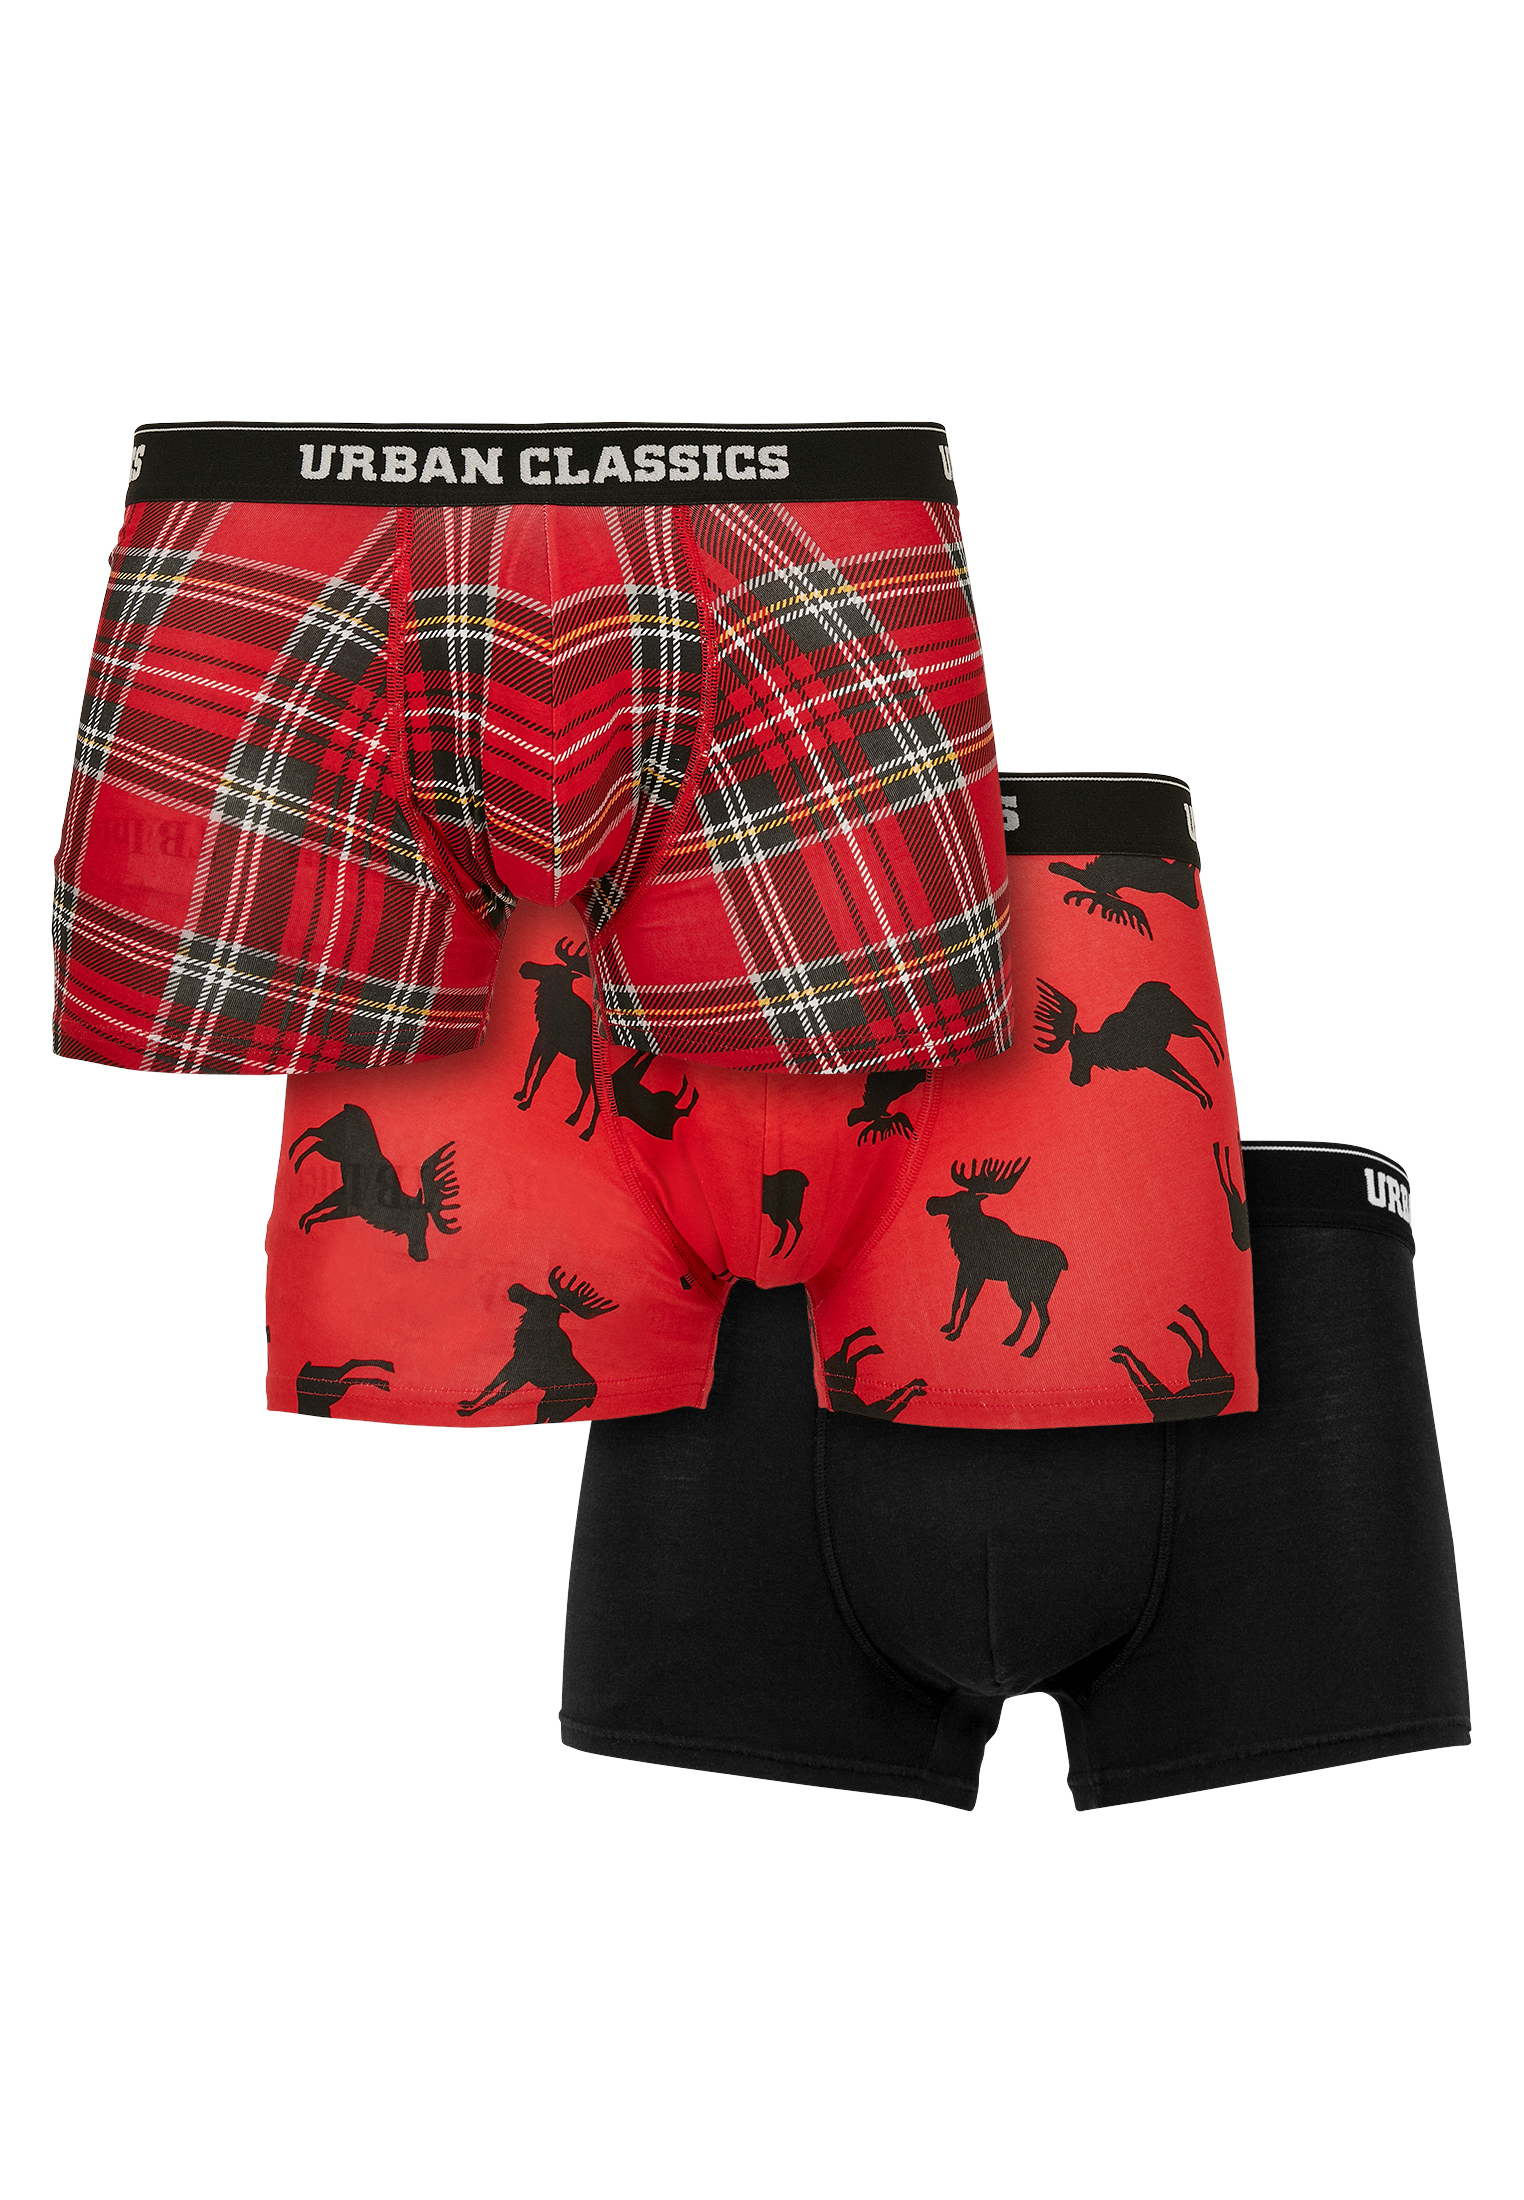 Боксеры Urban Classics Boxershorts, цвет red plaid aop+moose aop+blk цена и фото